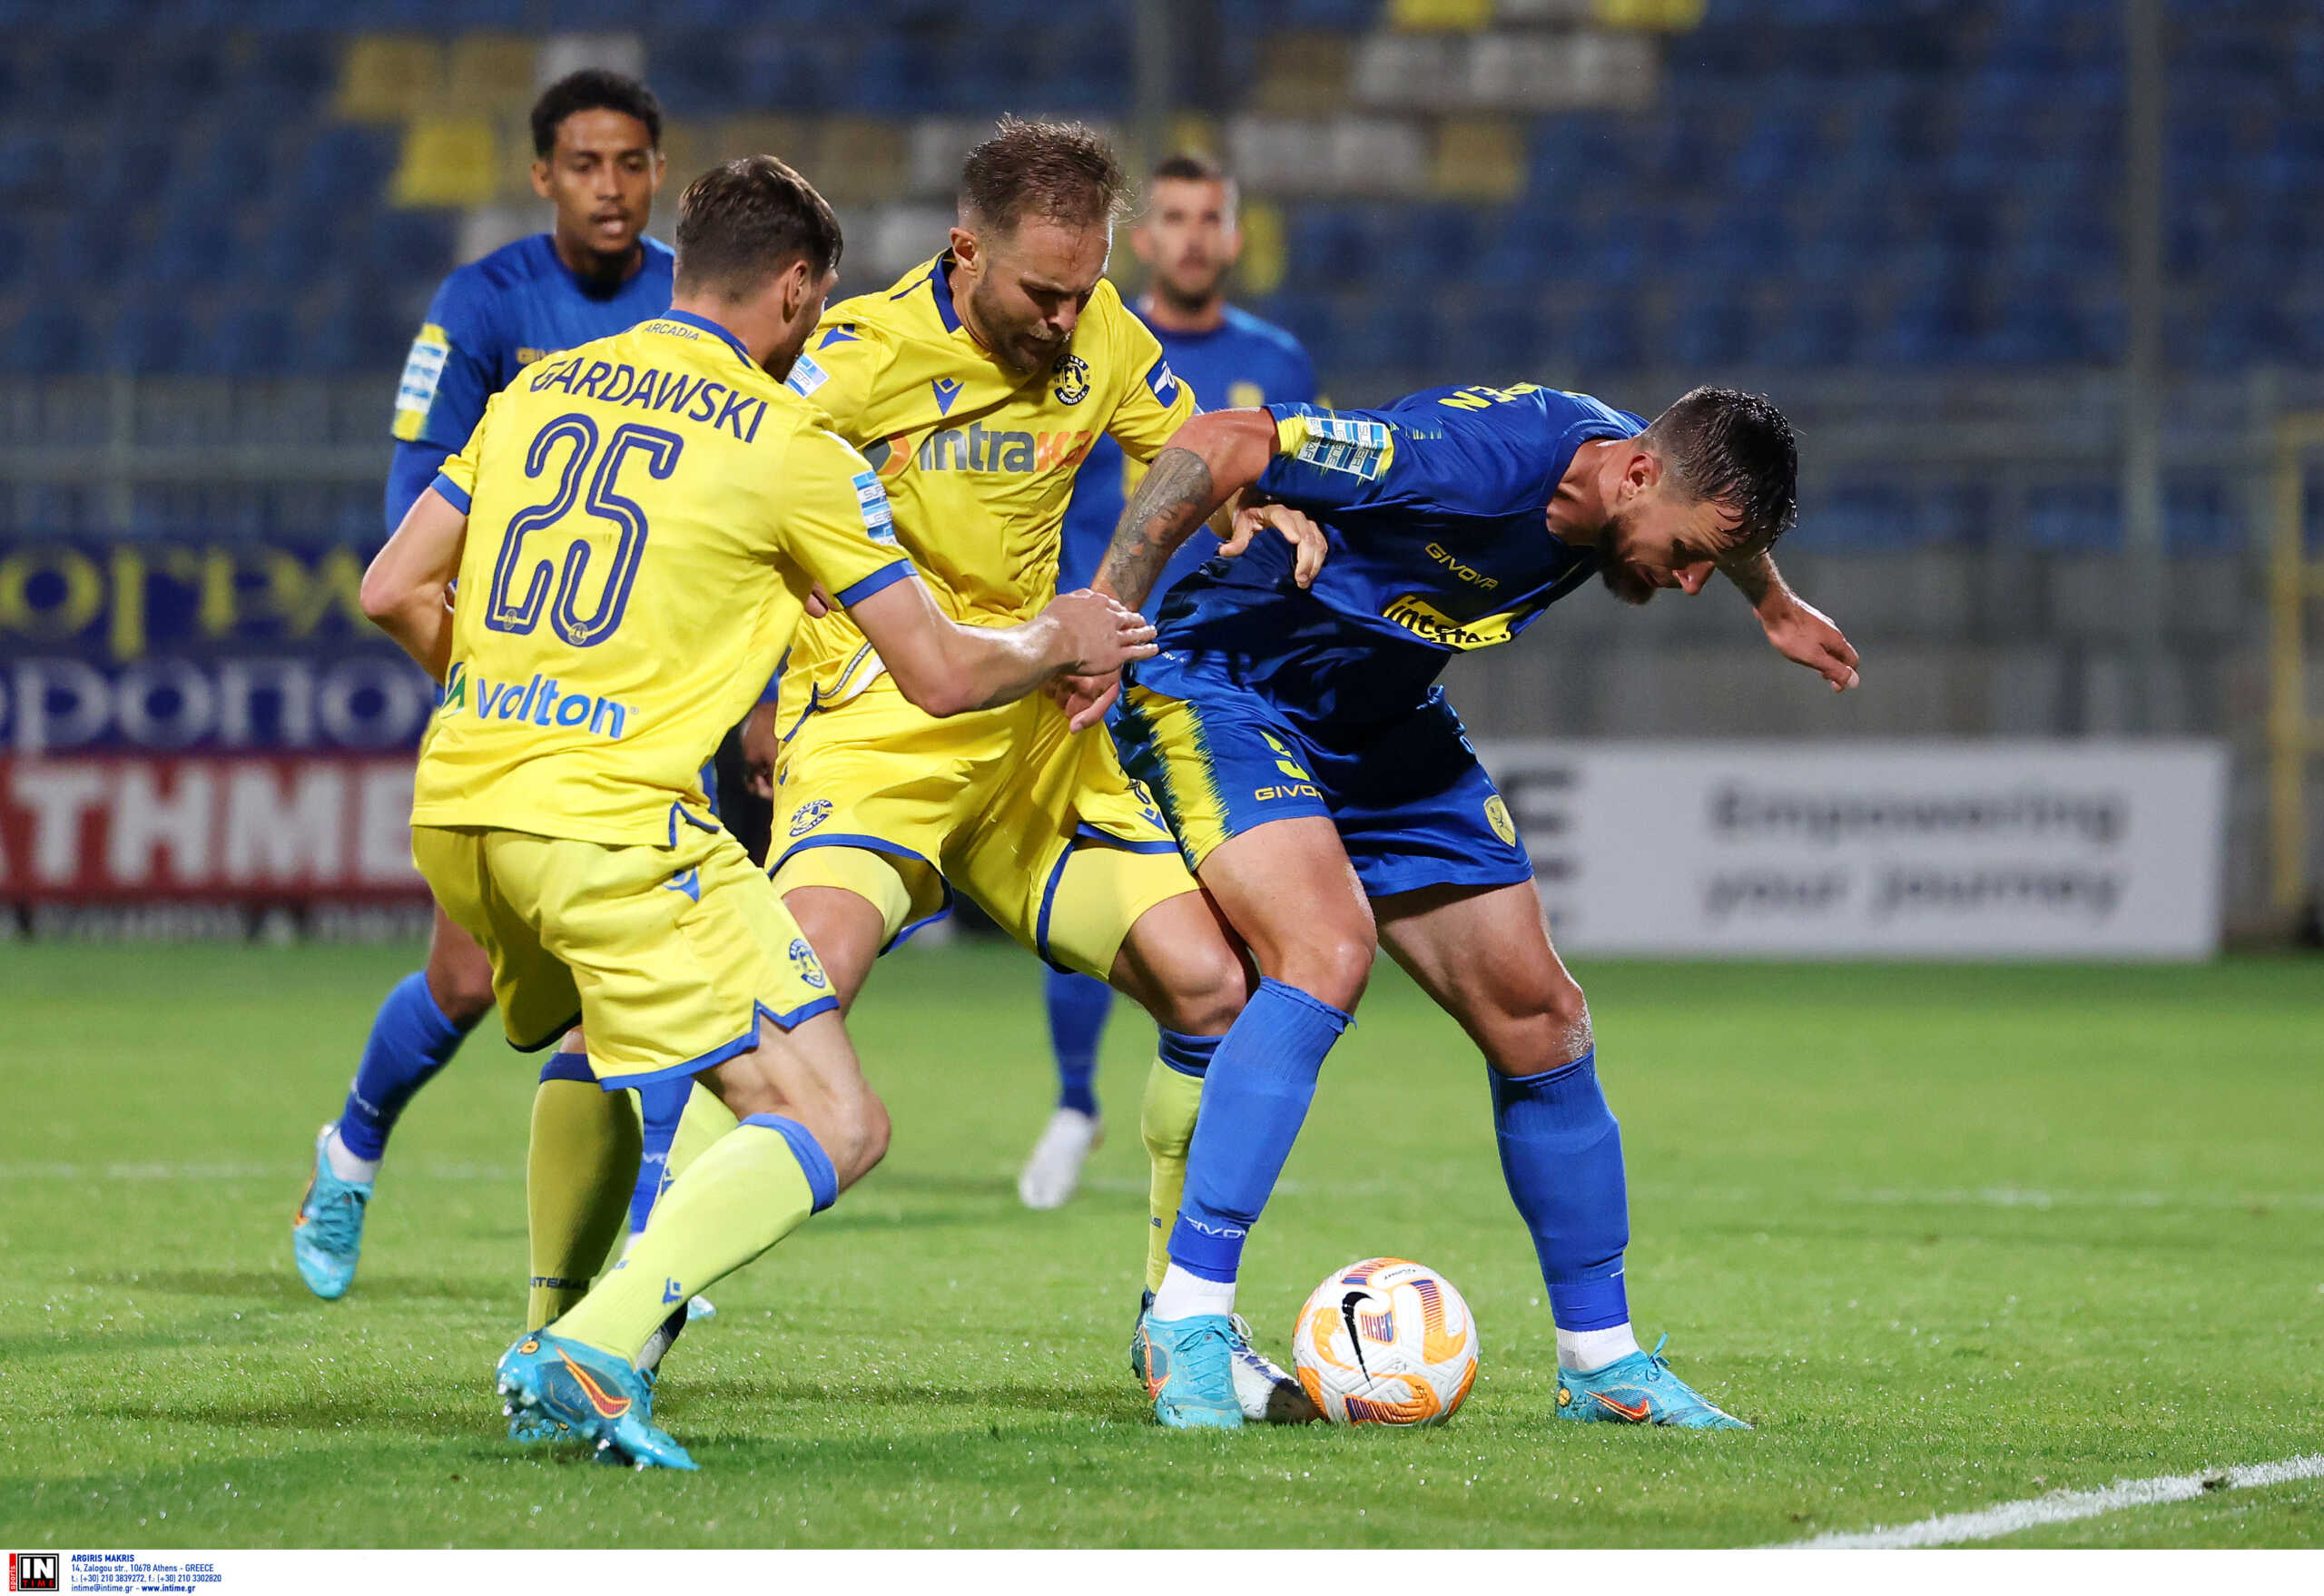 Αστέρας Τρίπολης – Παναιτωλικός 0-0: Τον περιόρισε και απέσπασε εκτός έδρας βαθμό